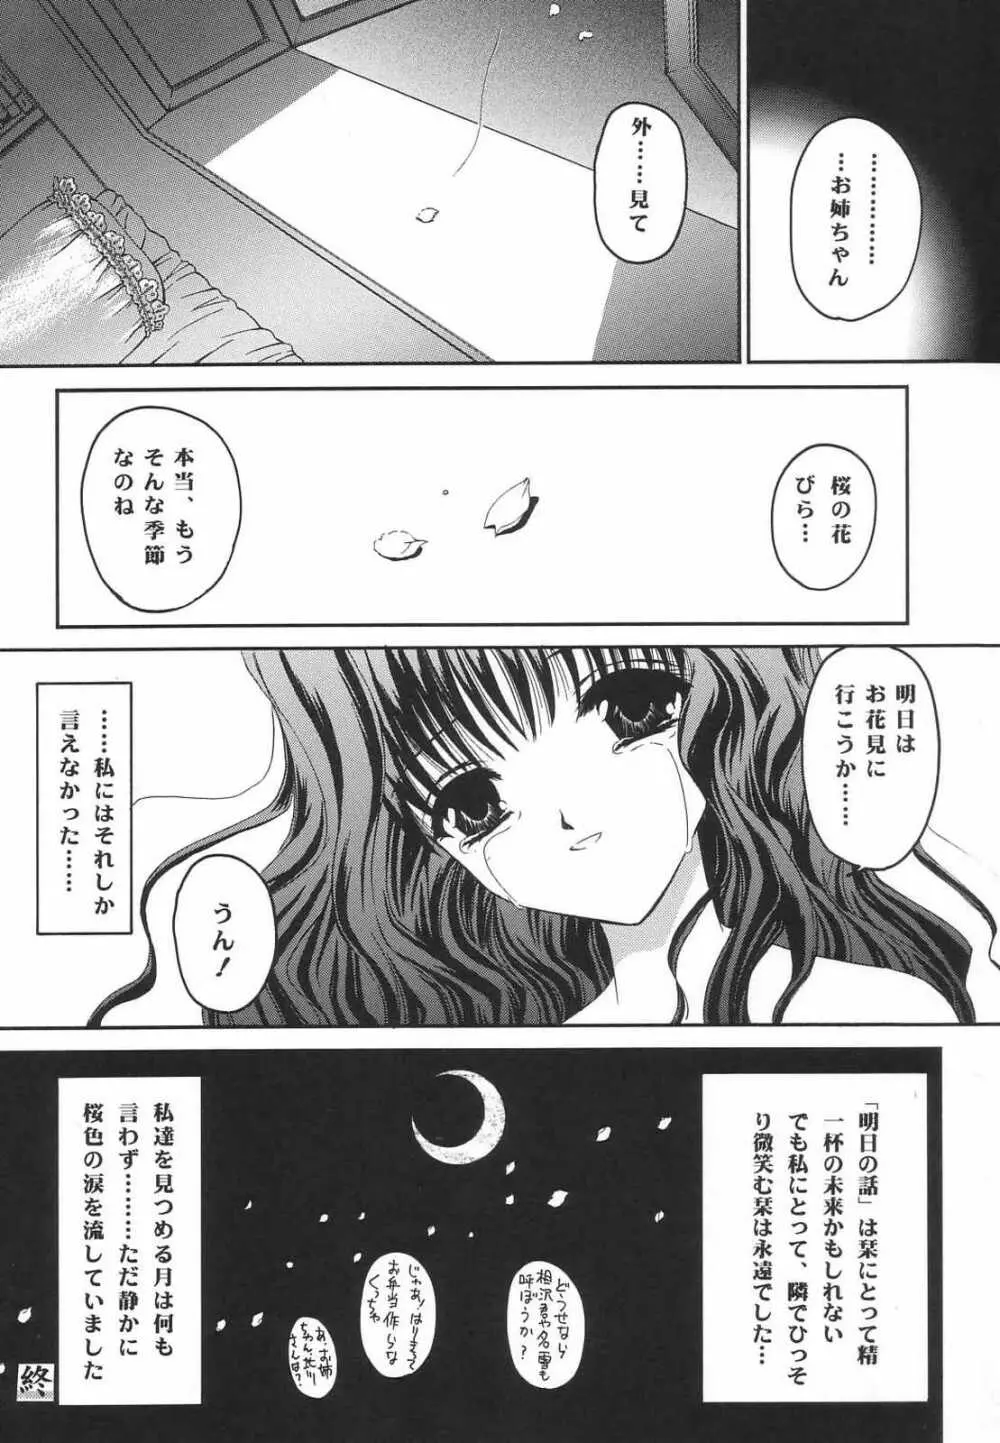 Shimensoka 8 29ページ